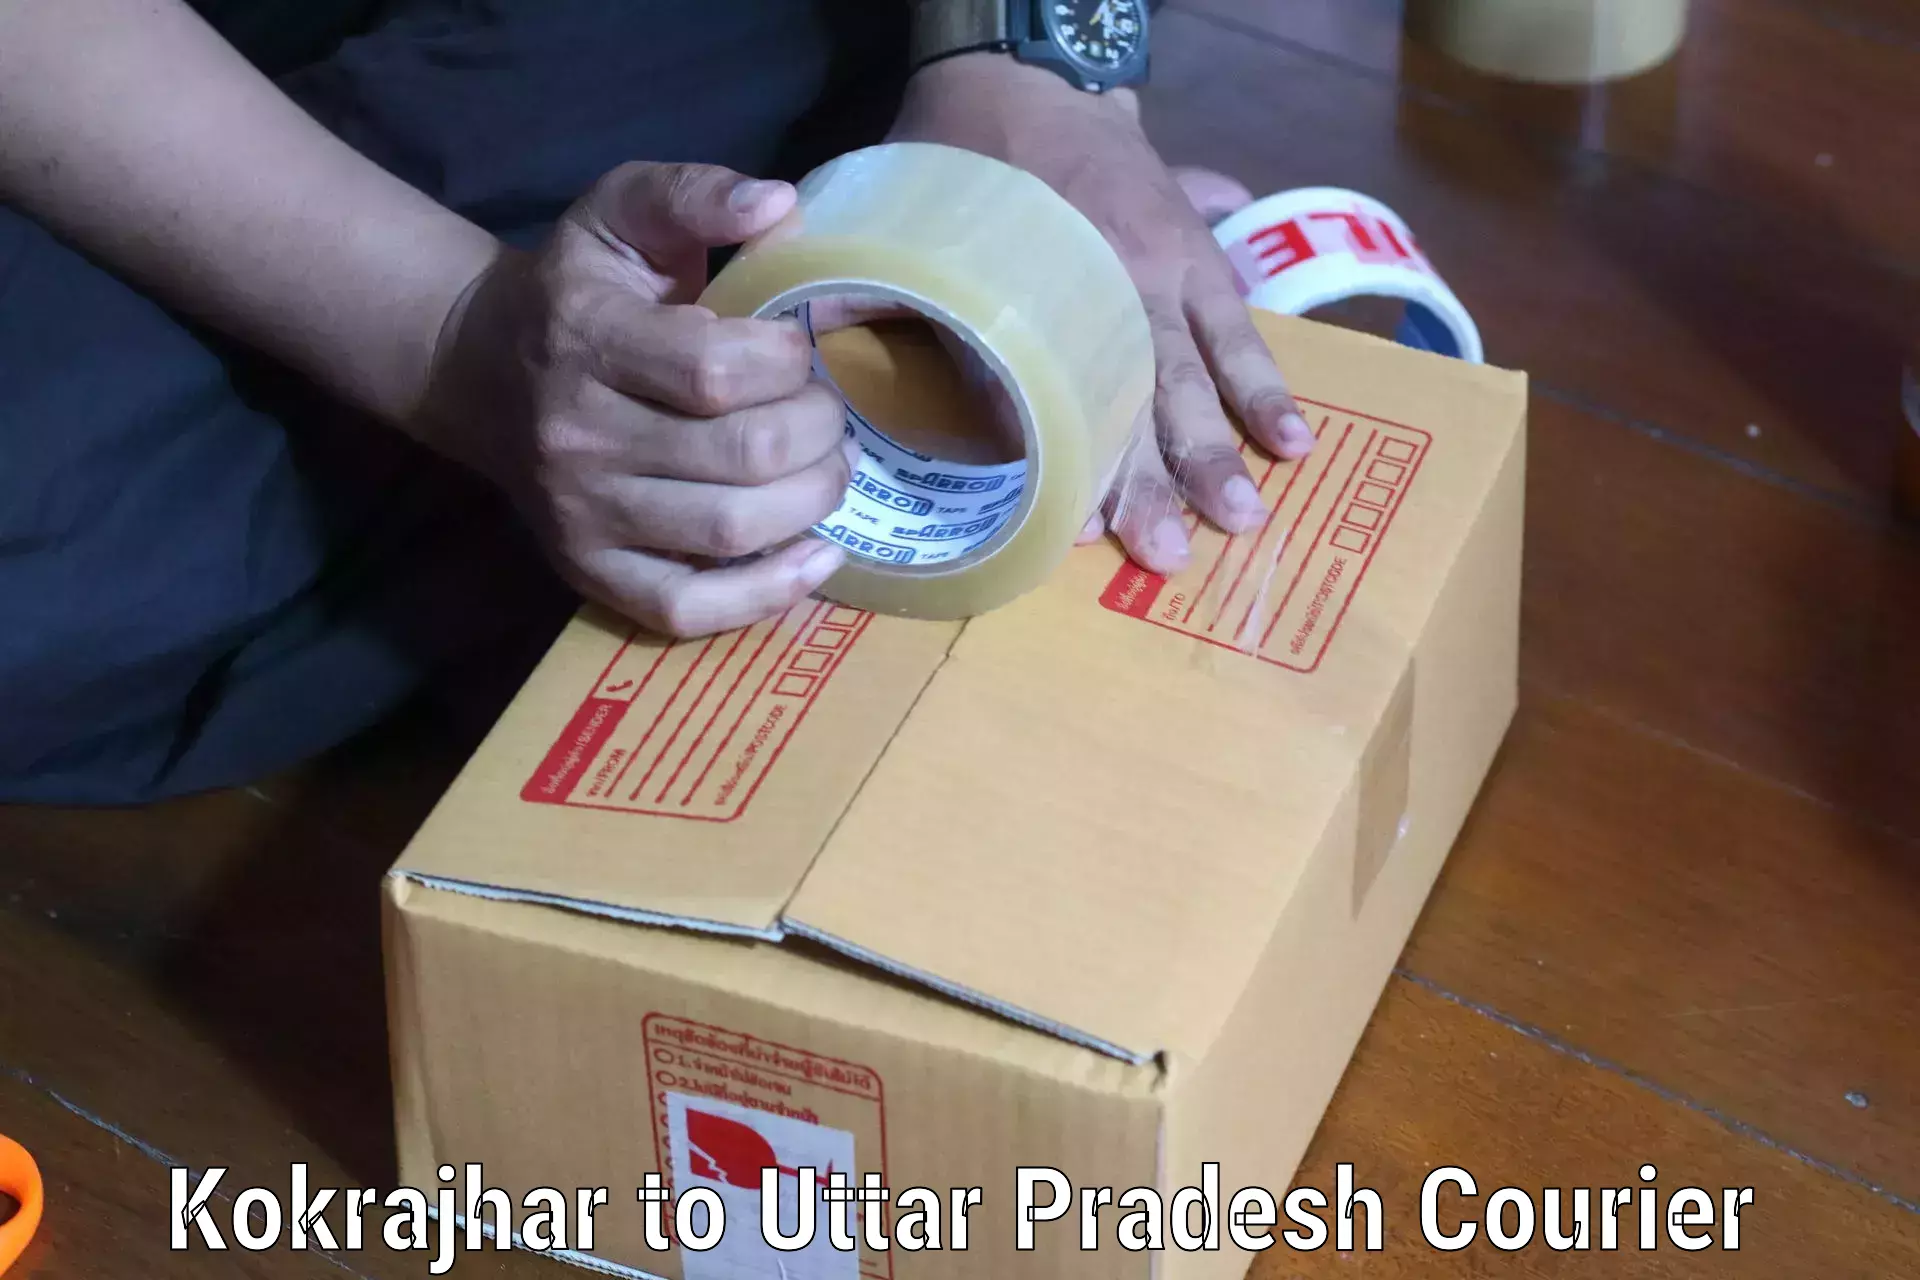 Nationwide parcel services Kokrajhar to Agra